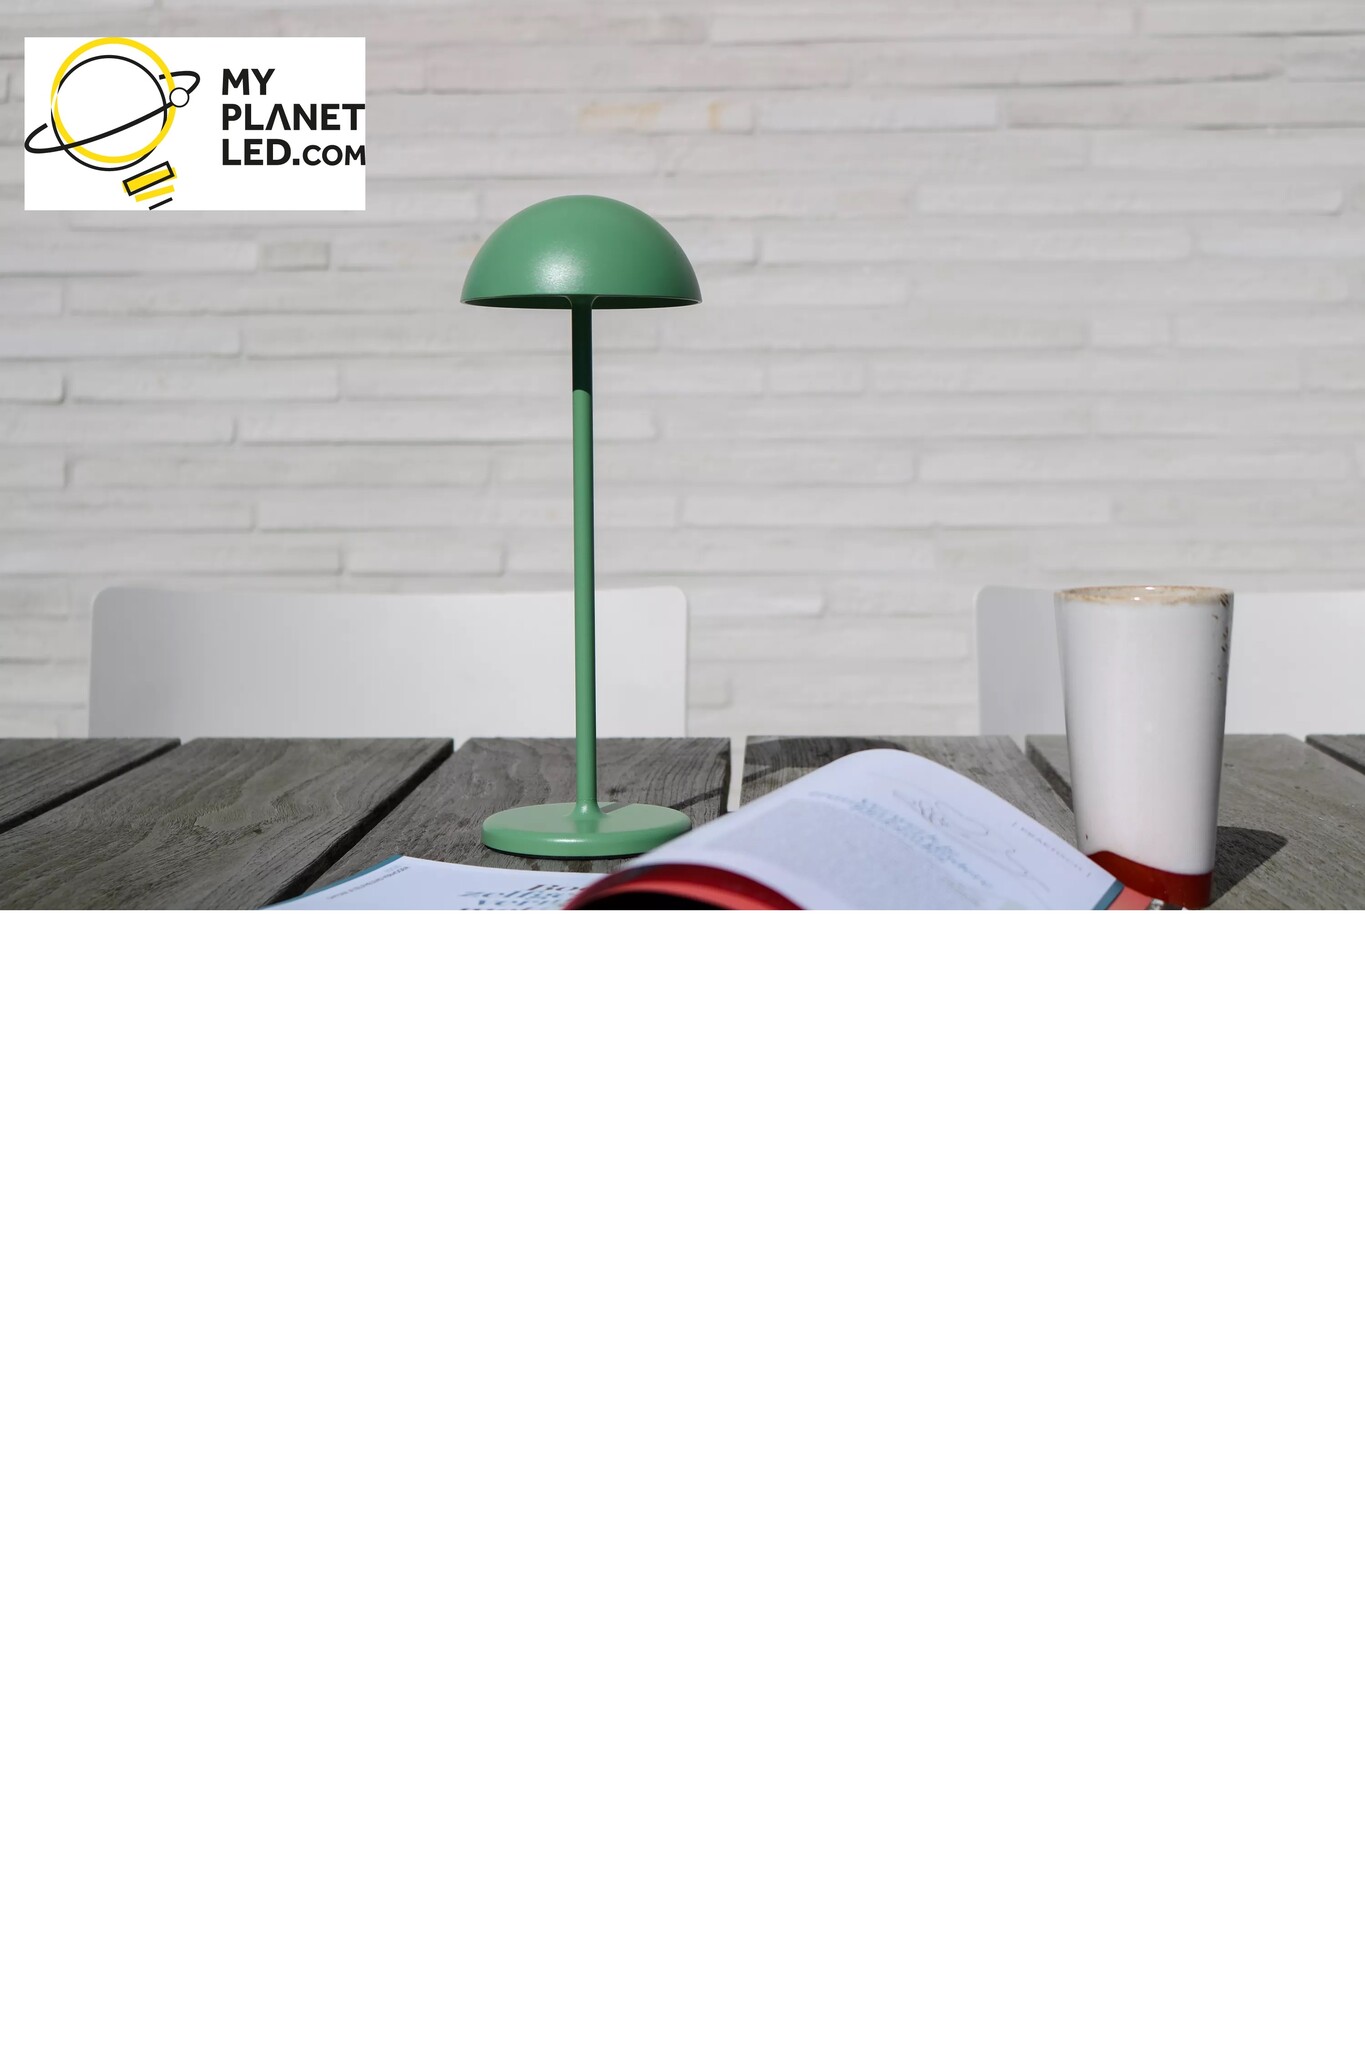 Lámpara de mesa exterior inalámbrica recargable USB blanca regulable 1.5W